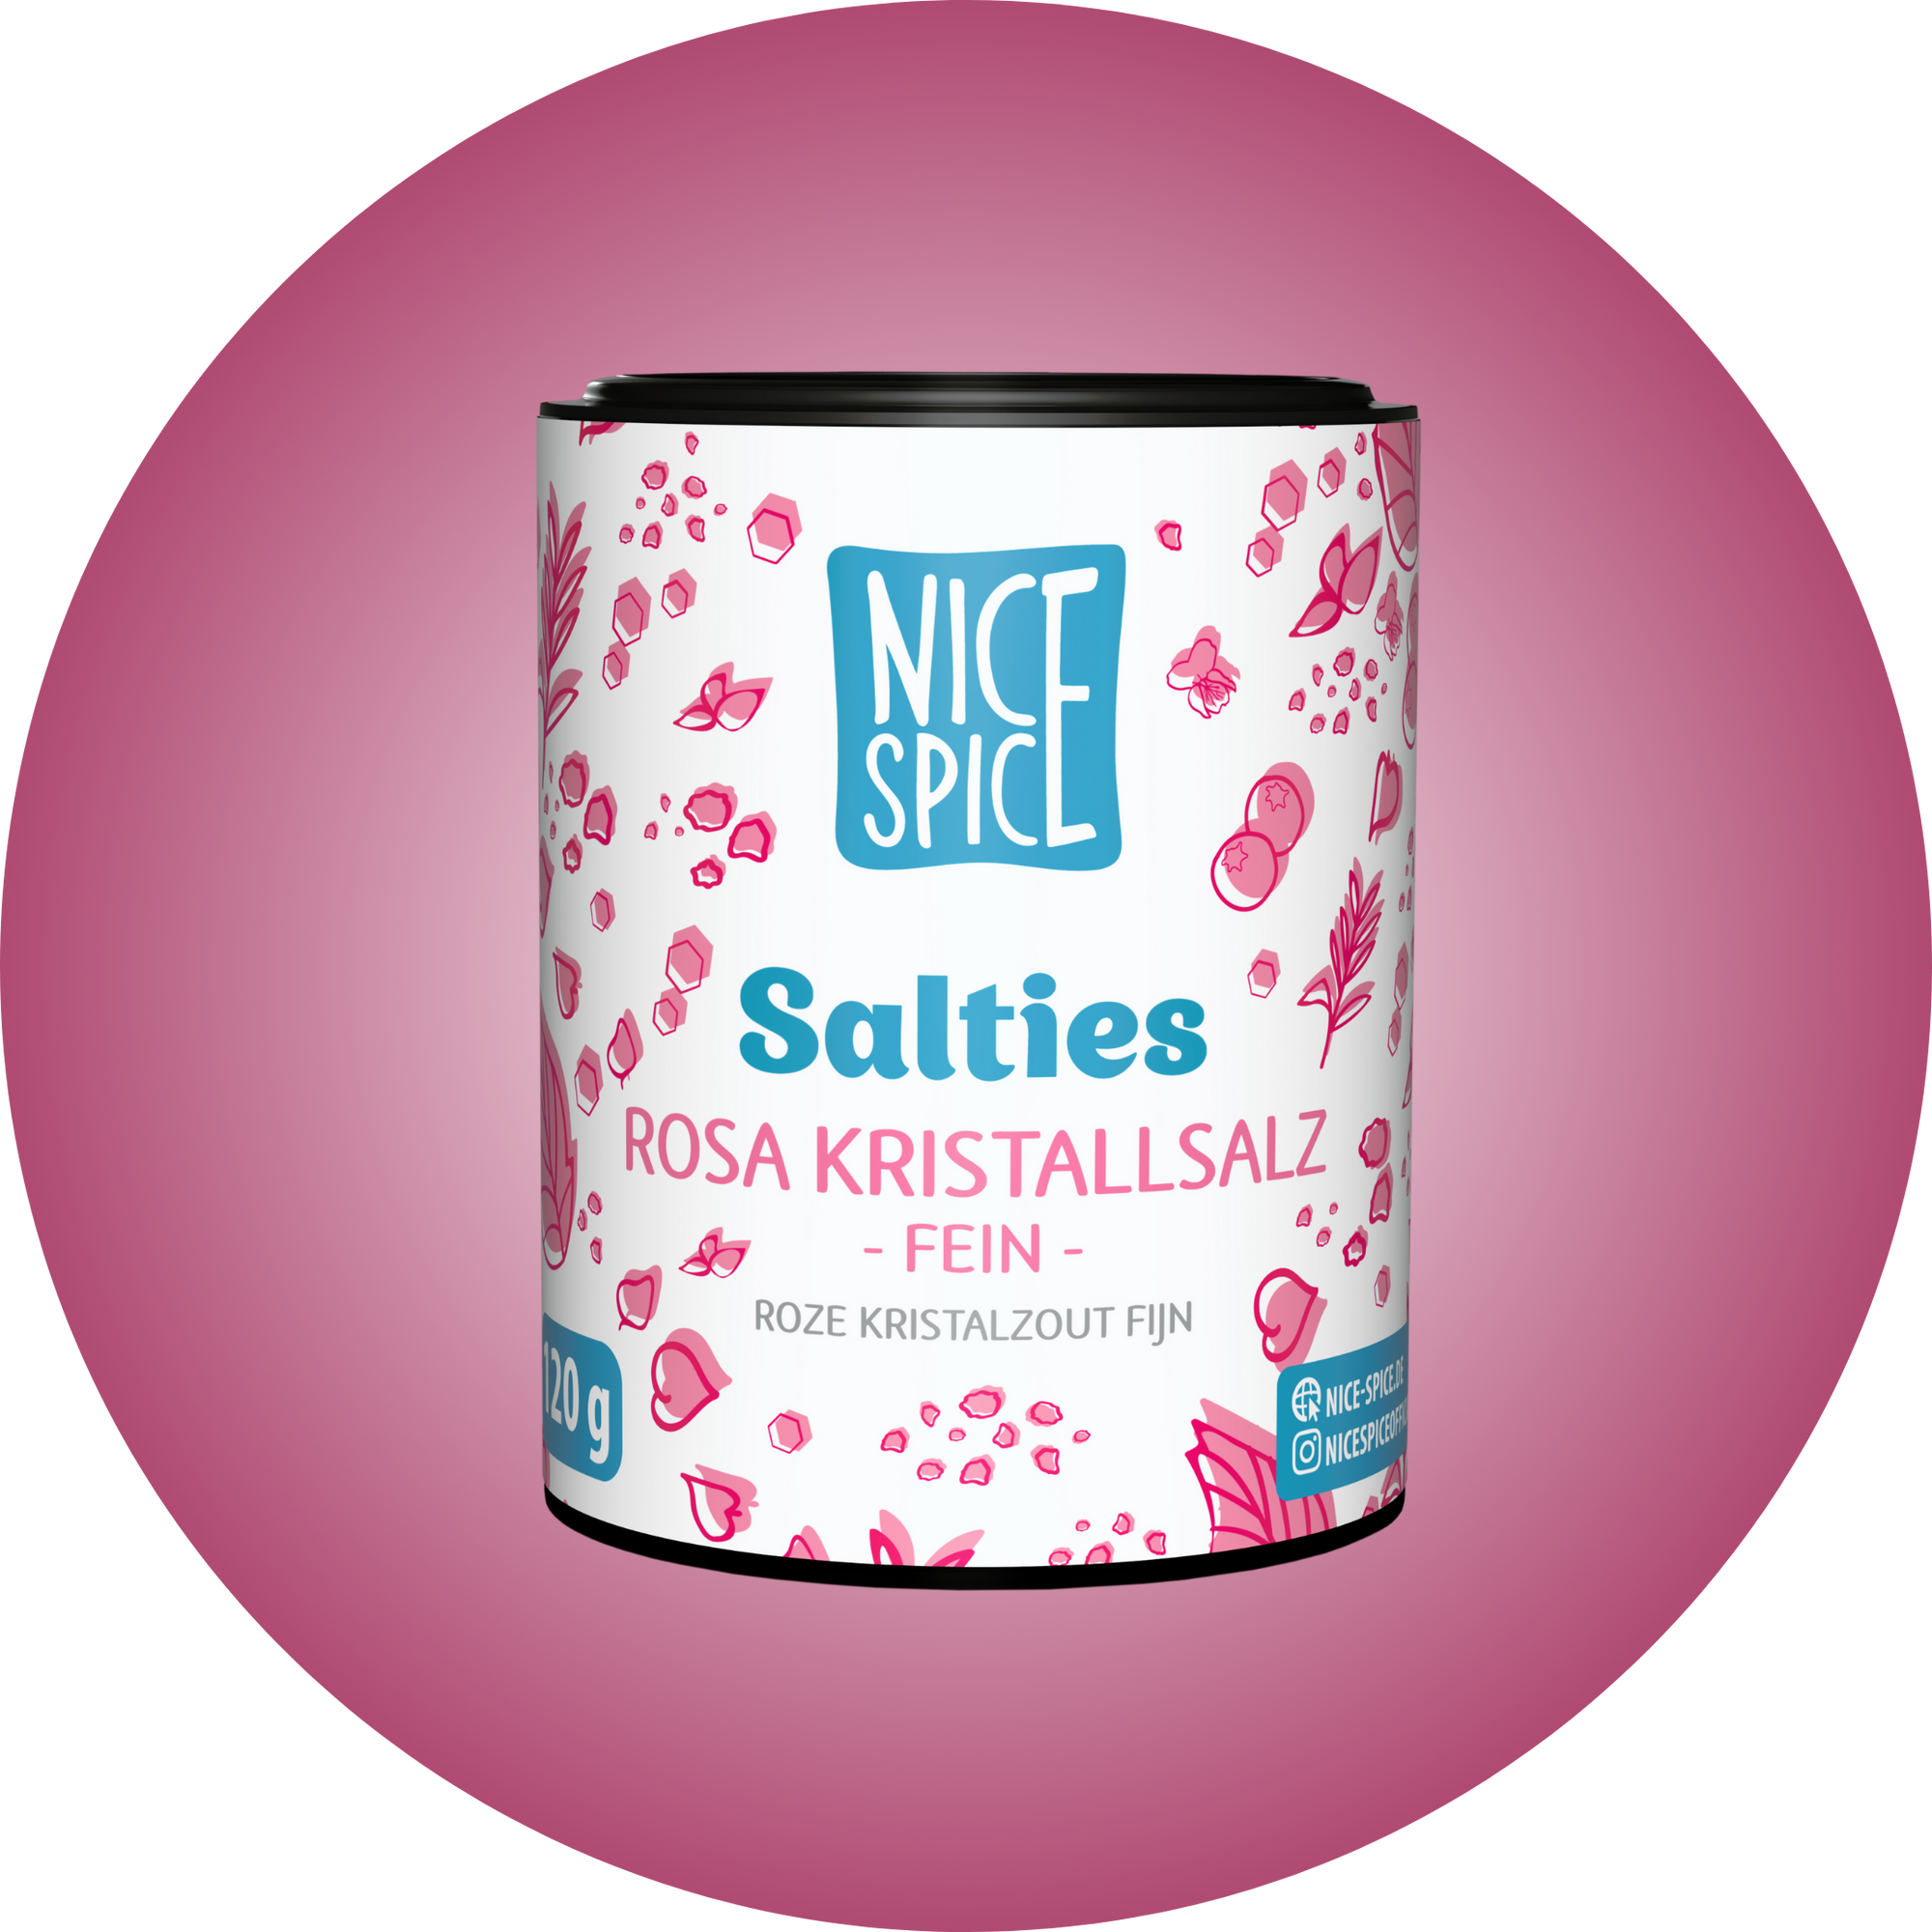 NICE SPICE Salties Rosa Kristallsalz in weissrosaner zylinderförmiger Dose mit verspieltem Design vor pinkem Hintergrund